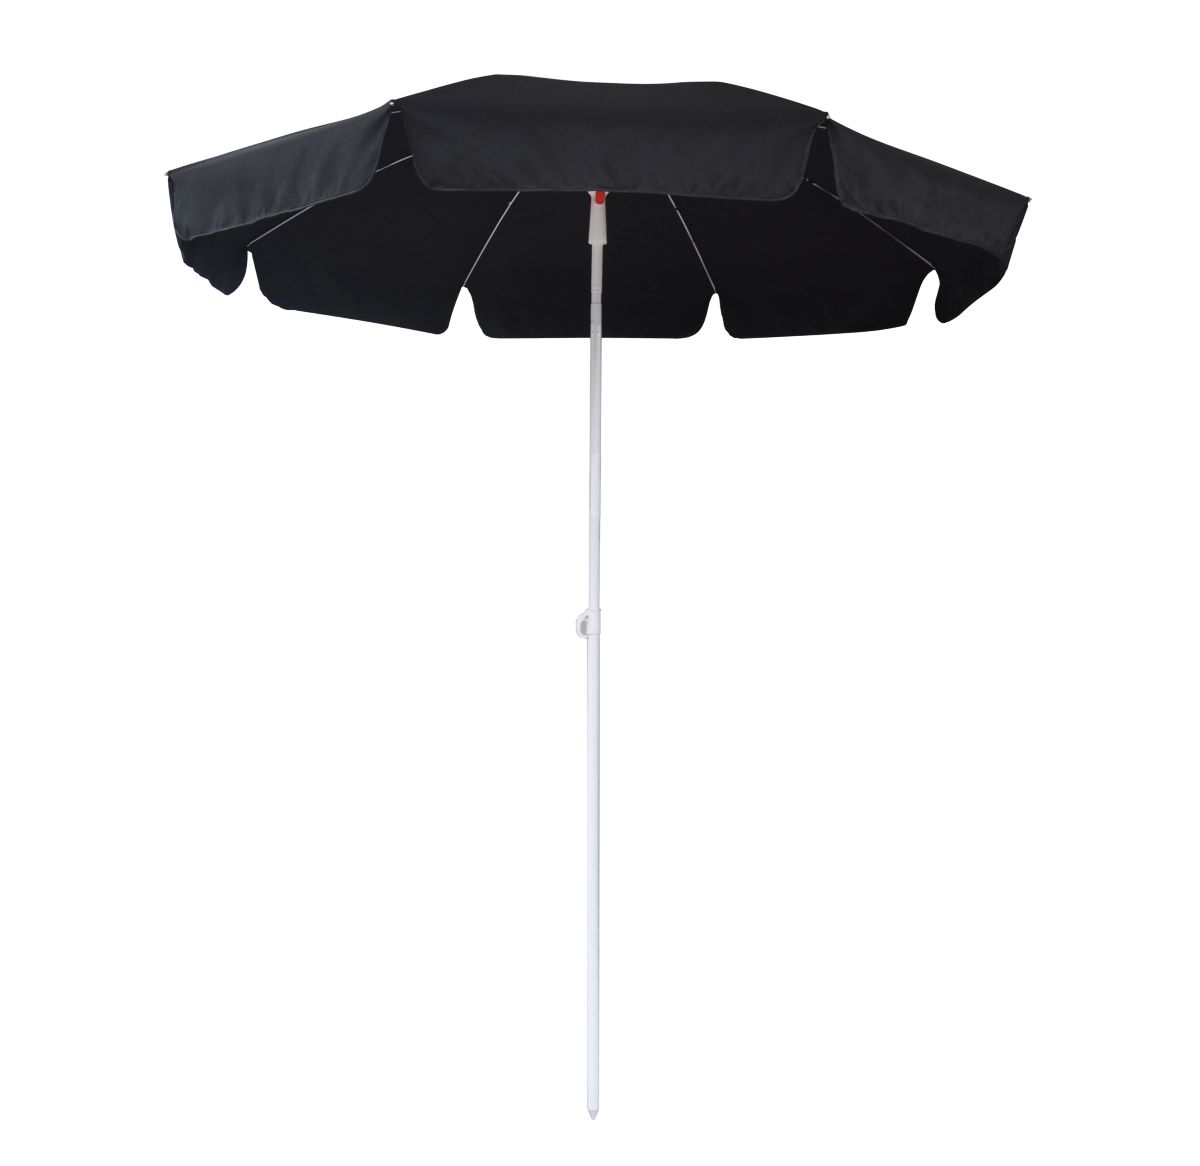  Parasol med tilt  Ø 180 cm. - sort NR 63